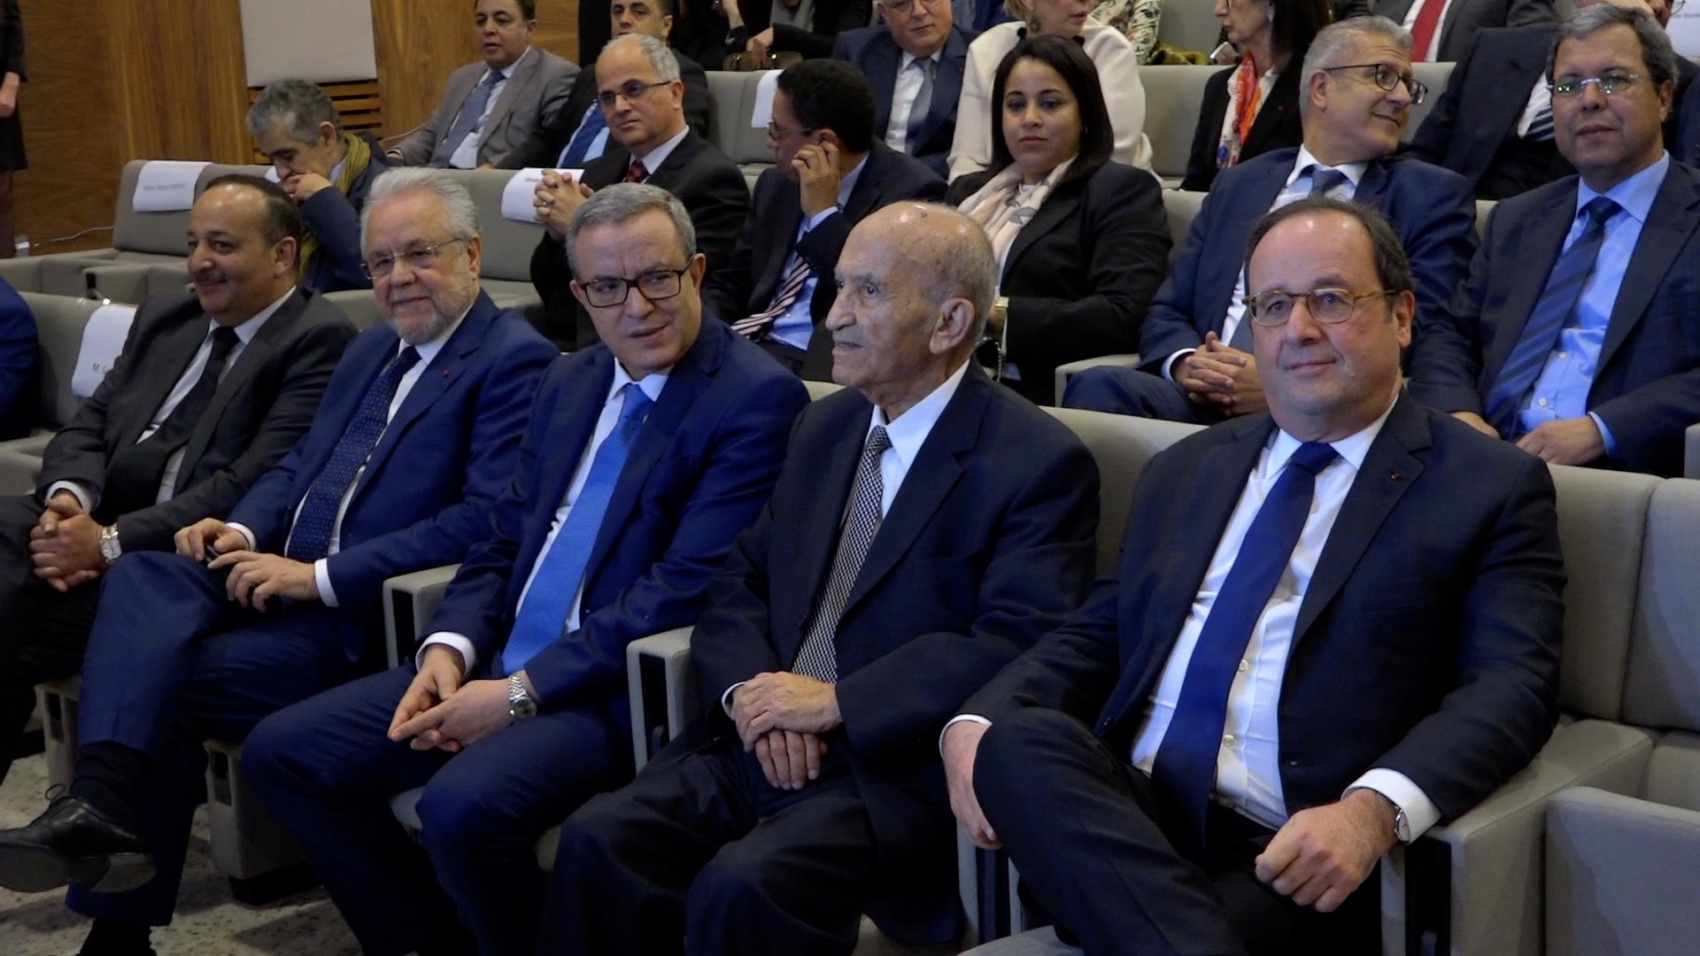 L'ancien président français aux côté d'Abderrahman Youssoufi et des membres du gouvernement marocain.
